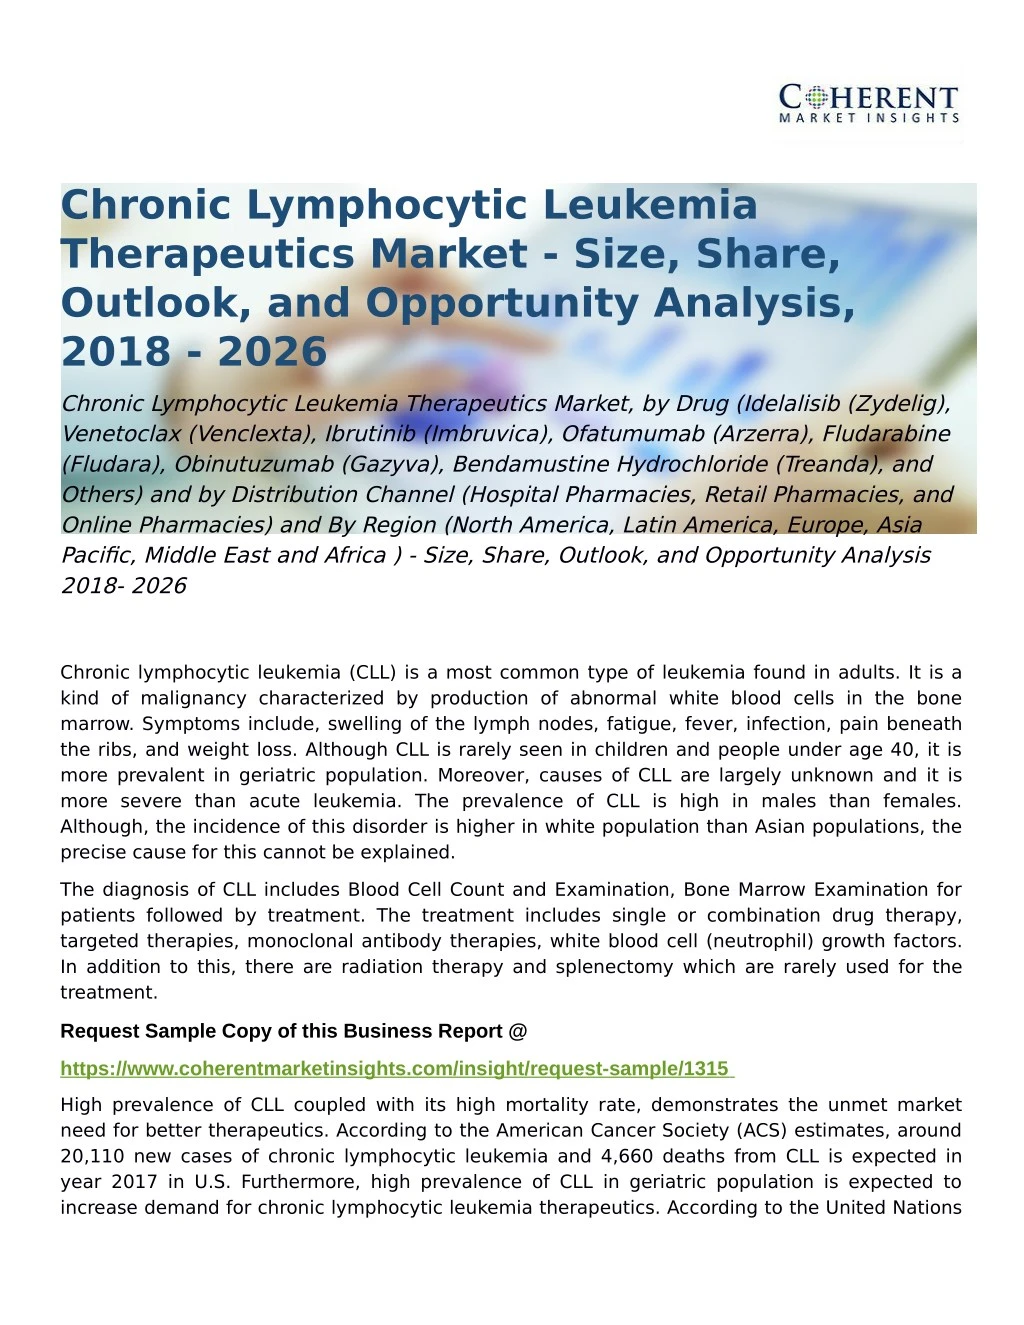 chronic lymphocytic leukemia therapeutics market